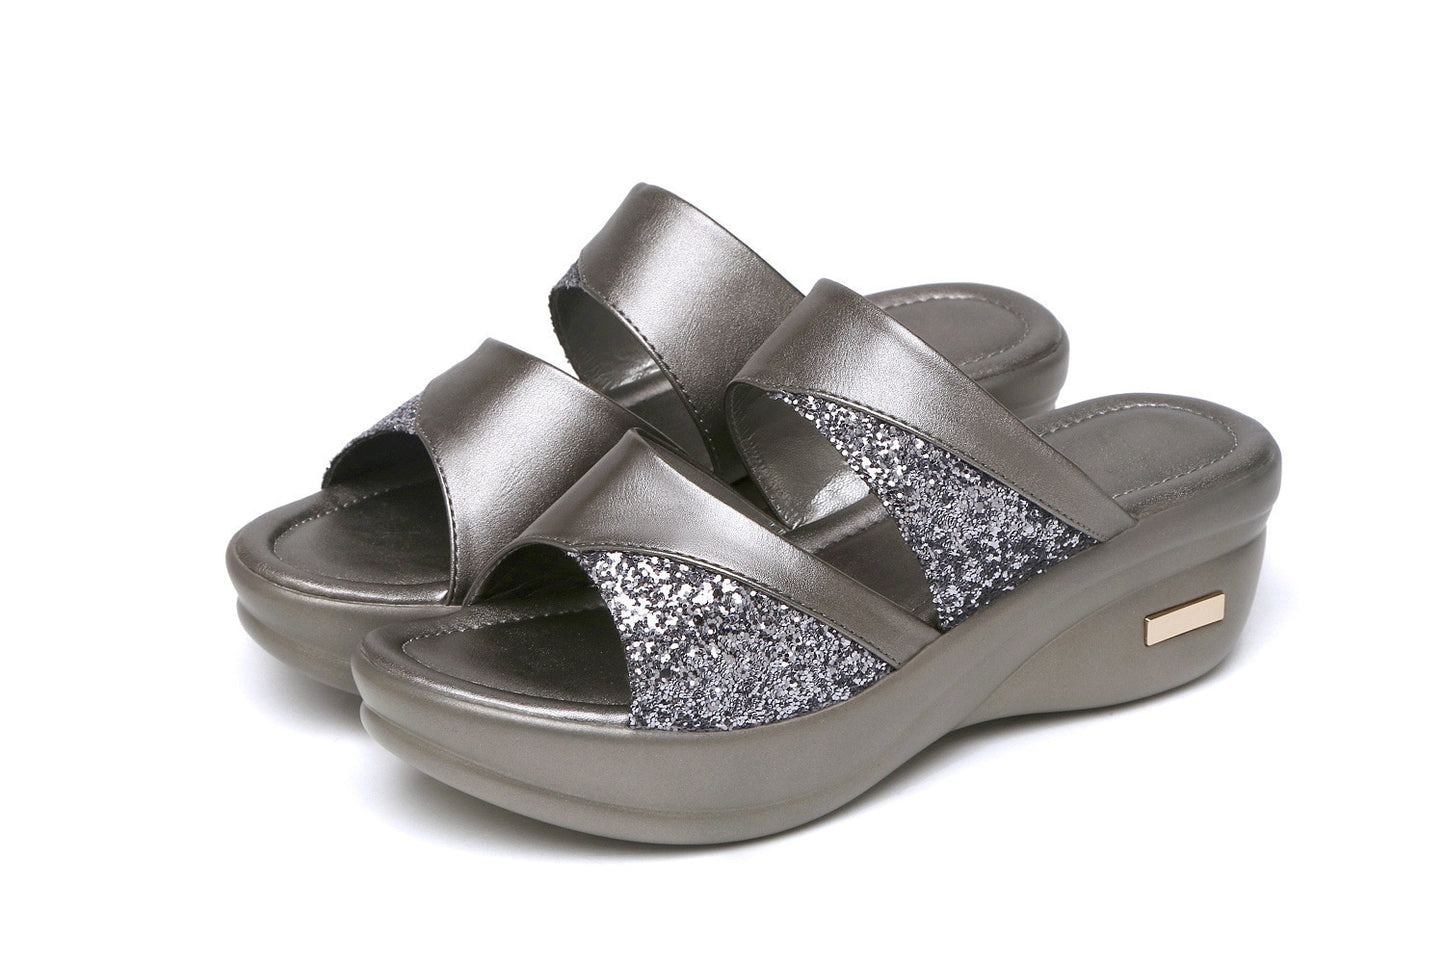 Comfortable Sequin Wedge Platform Summer Sandals